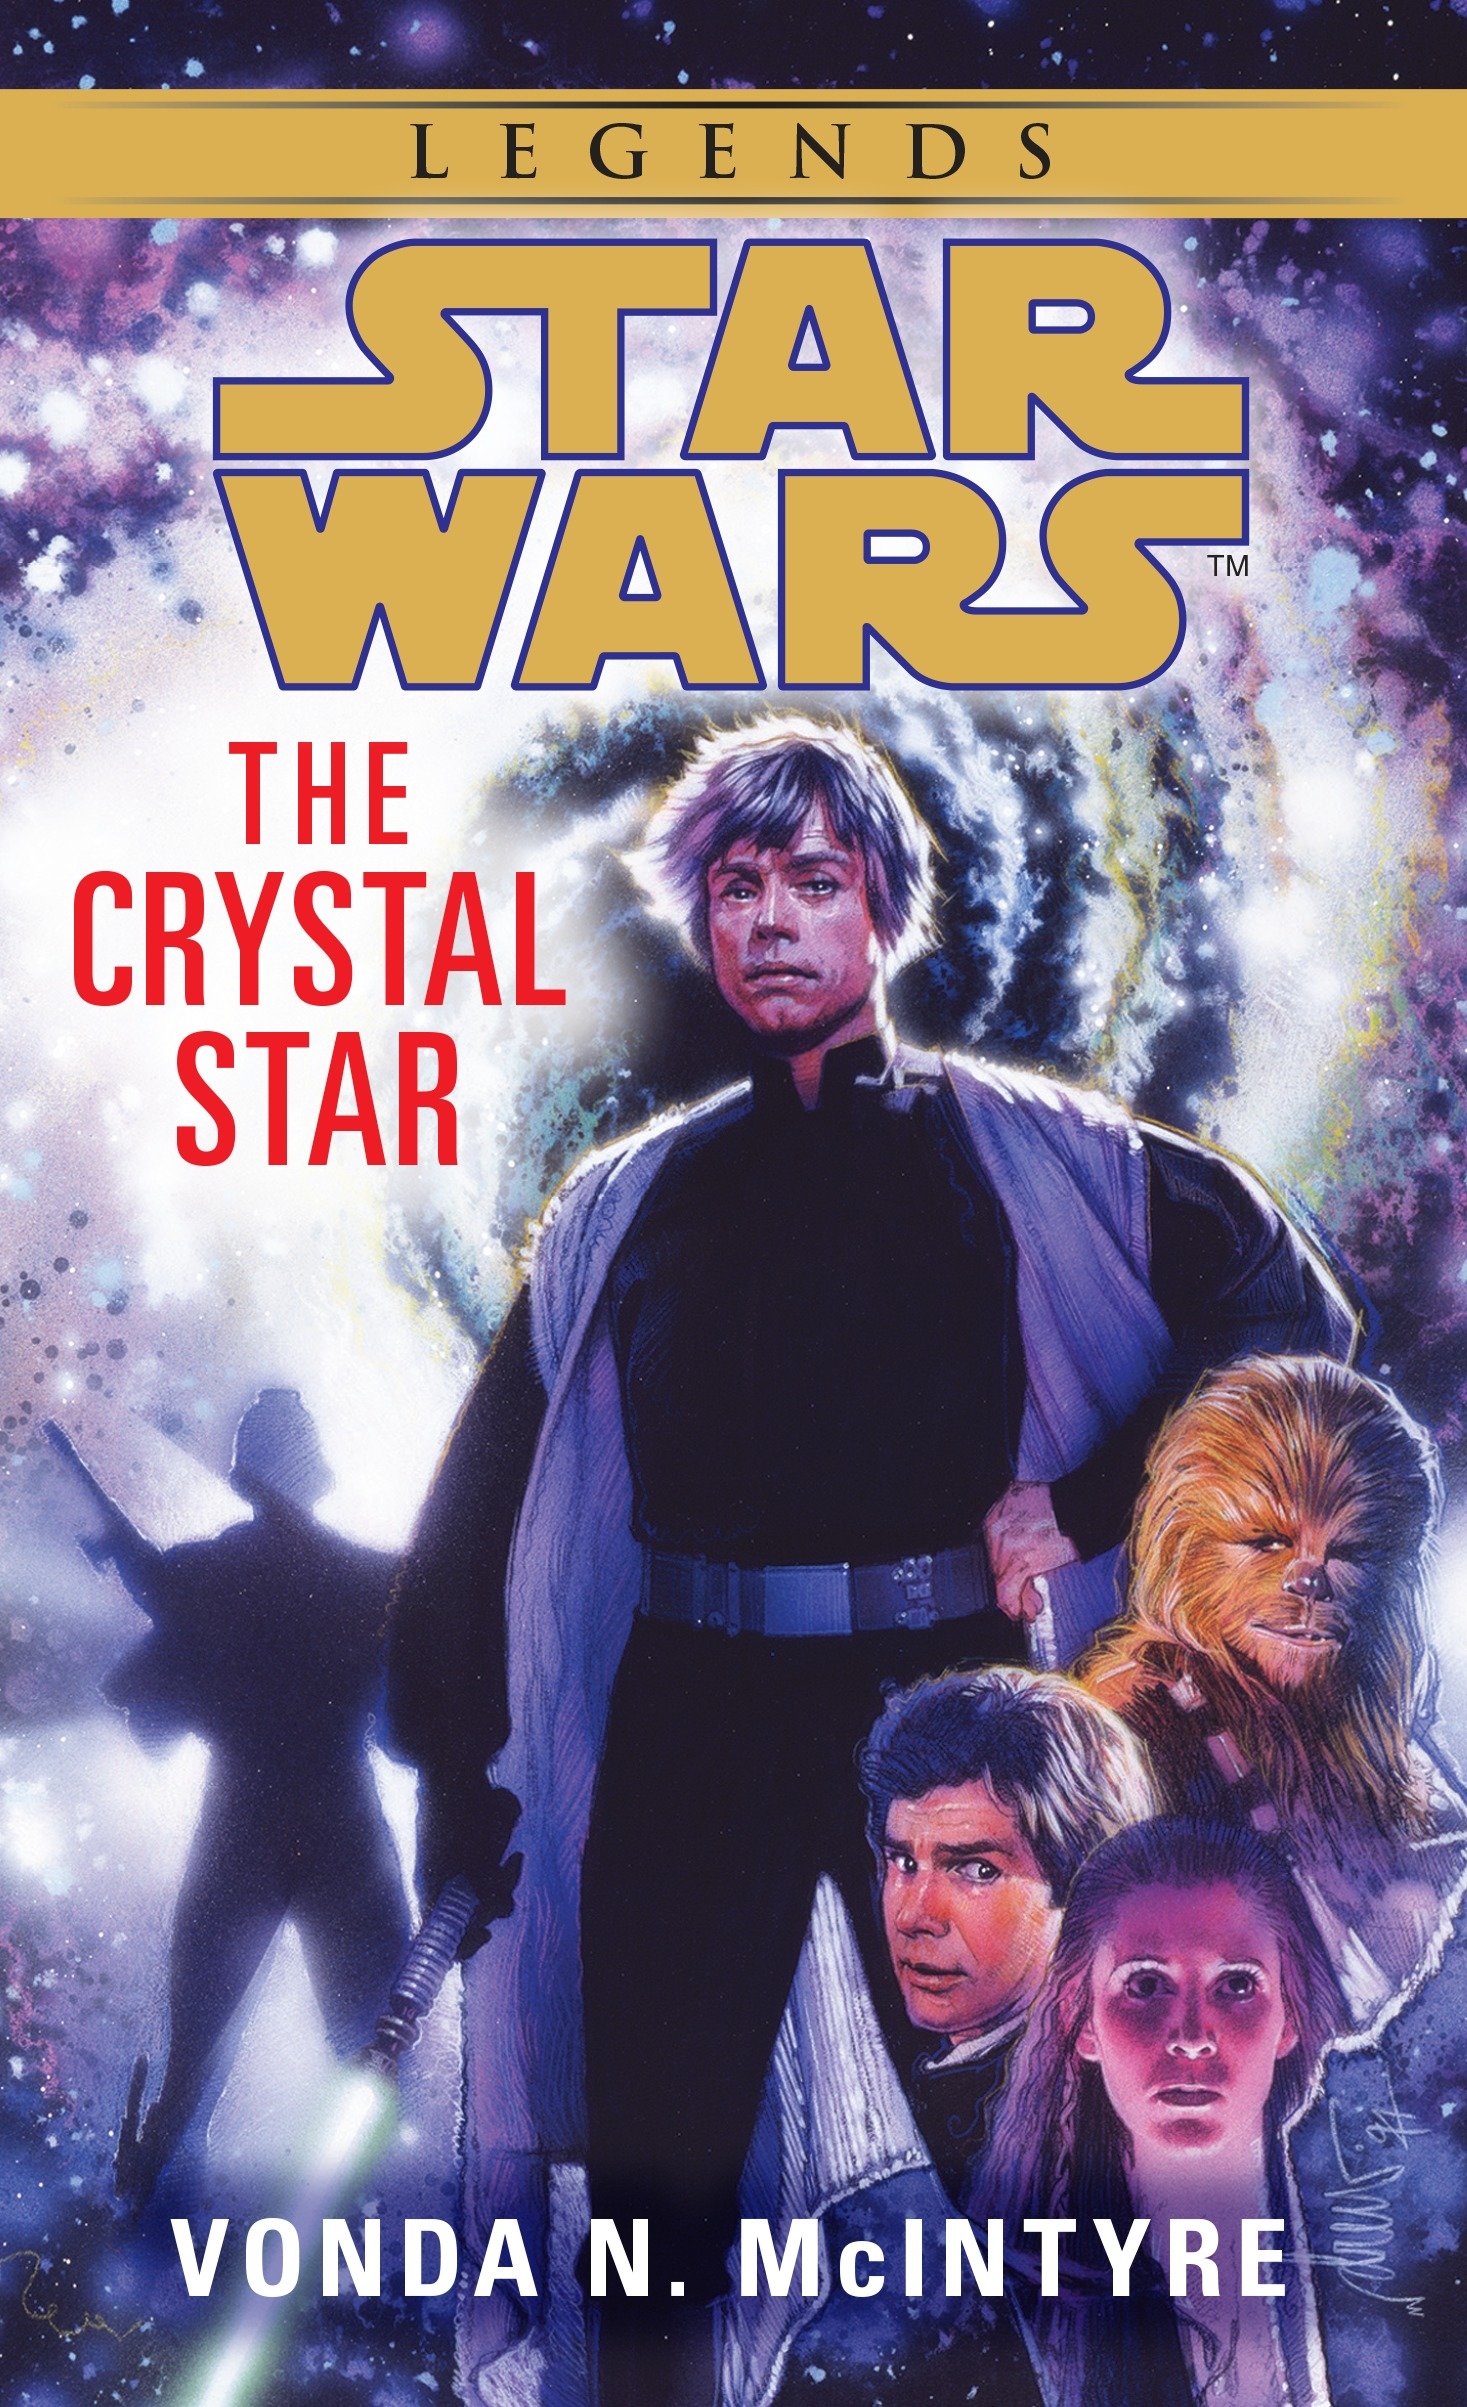 Okładka wydania oryginalnego (Legends) - The Crystal Star.